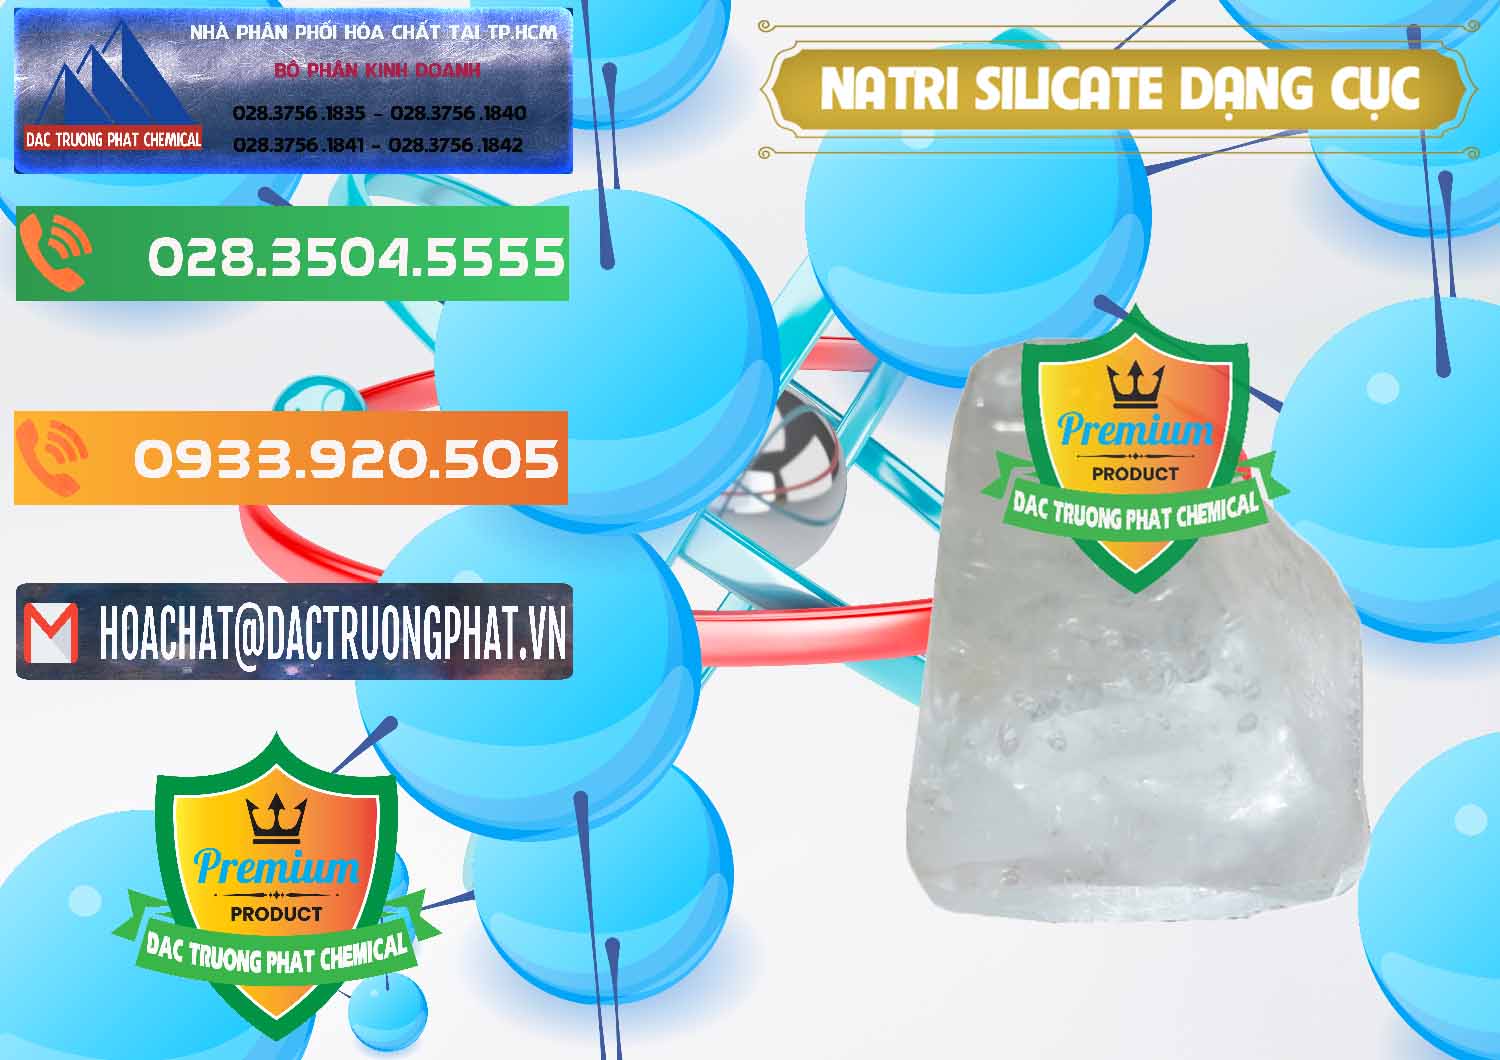 Đơn vị chuyên bán và cung ứng Natri Silicate - Na2SiO3 - Keo Silicate Dạng Cục Ấn Độ India - 0382 - Nơi chuyên phân phối & bán hóa chất tại TP.HCM - hoachatxulynuoc.com.vn